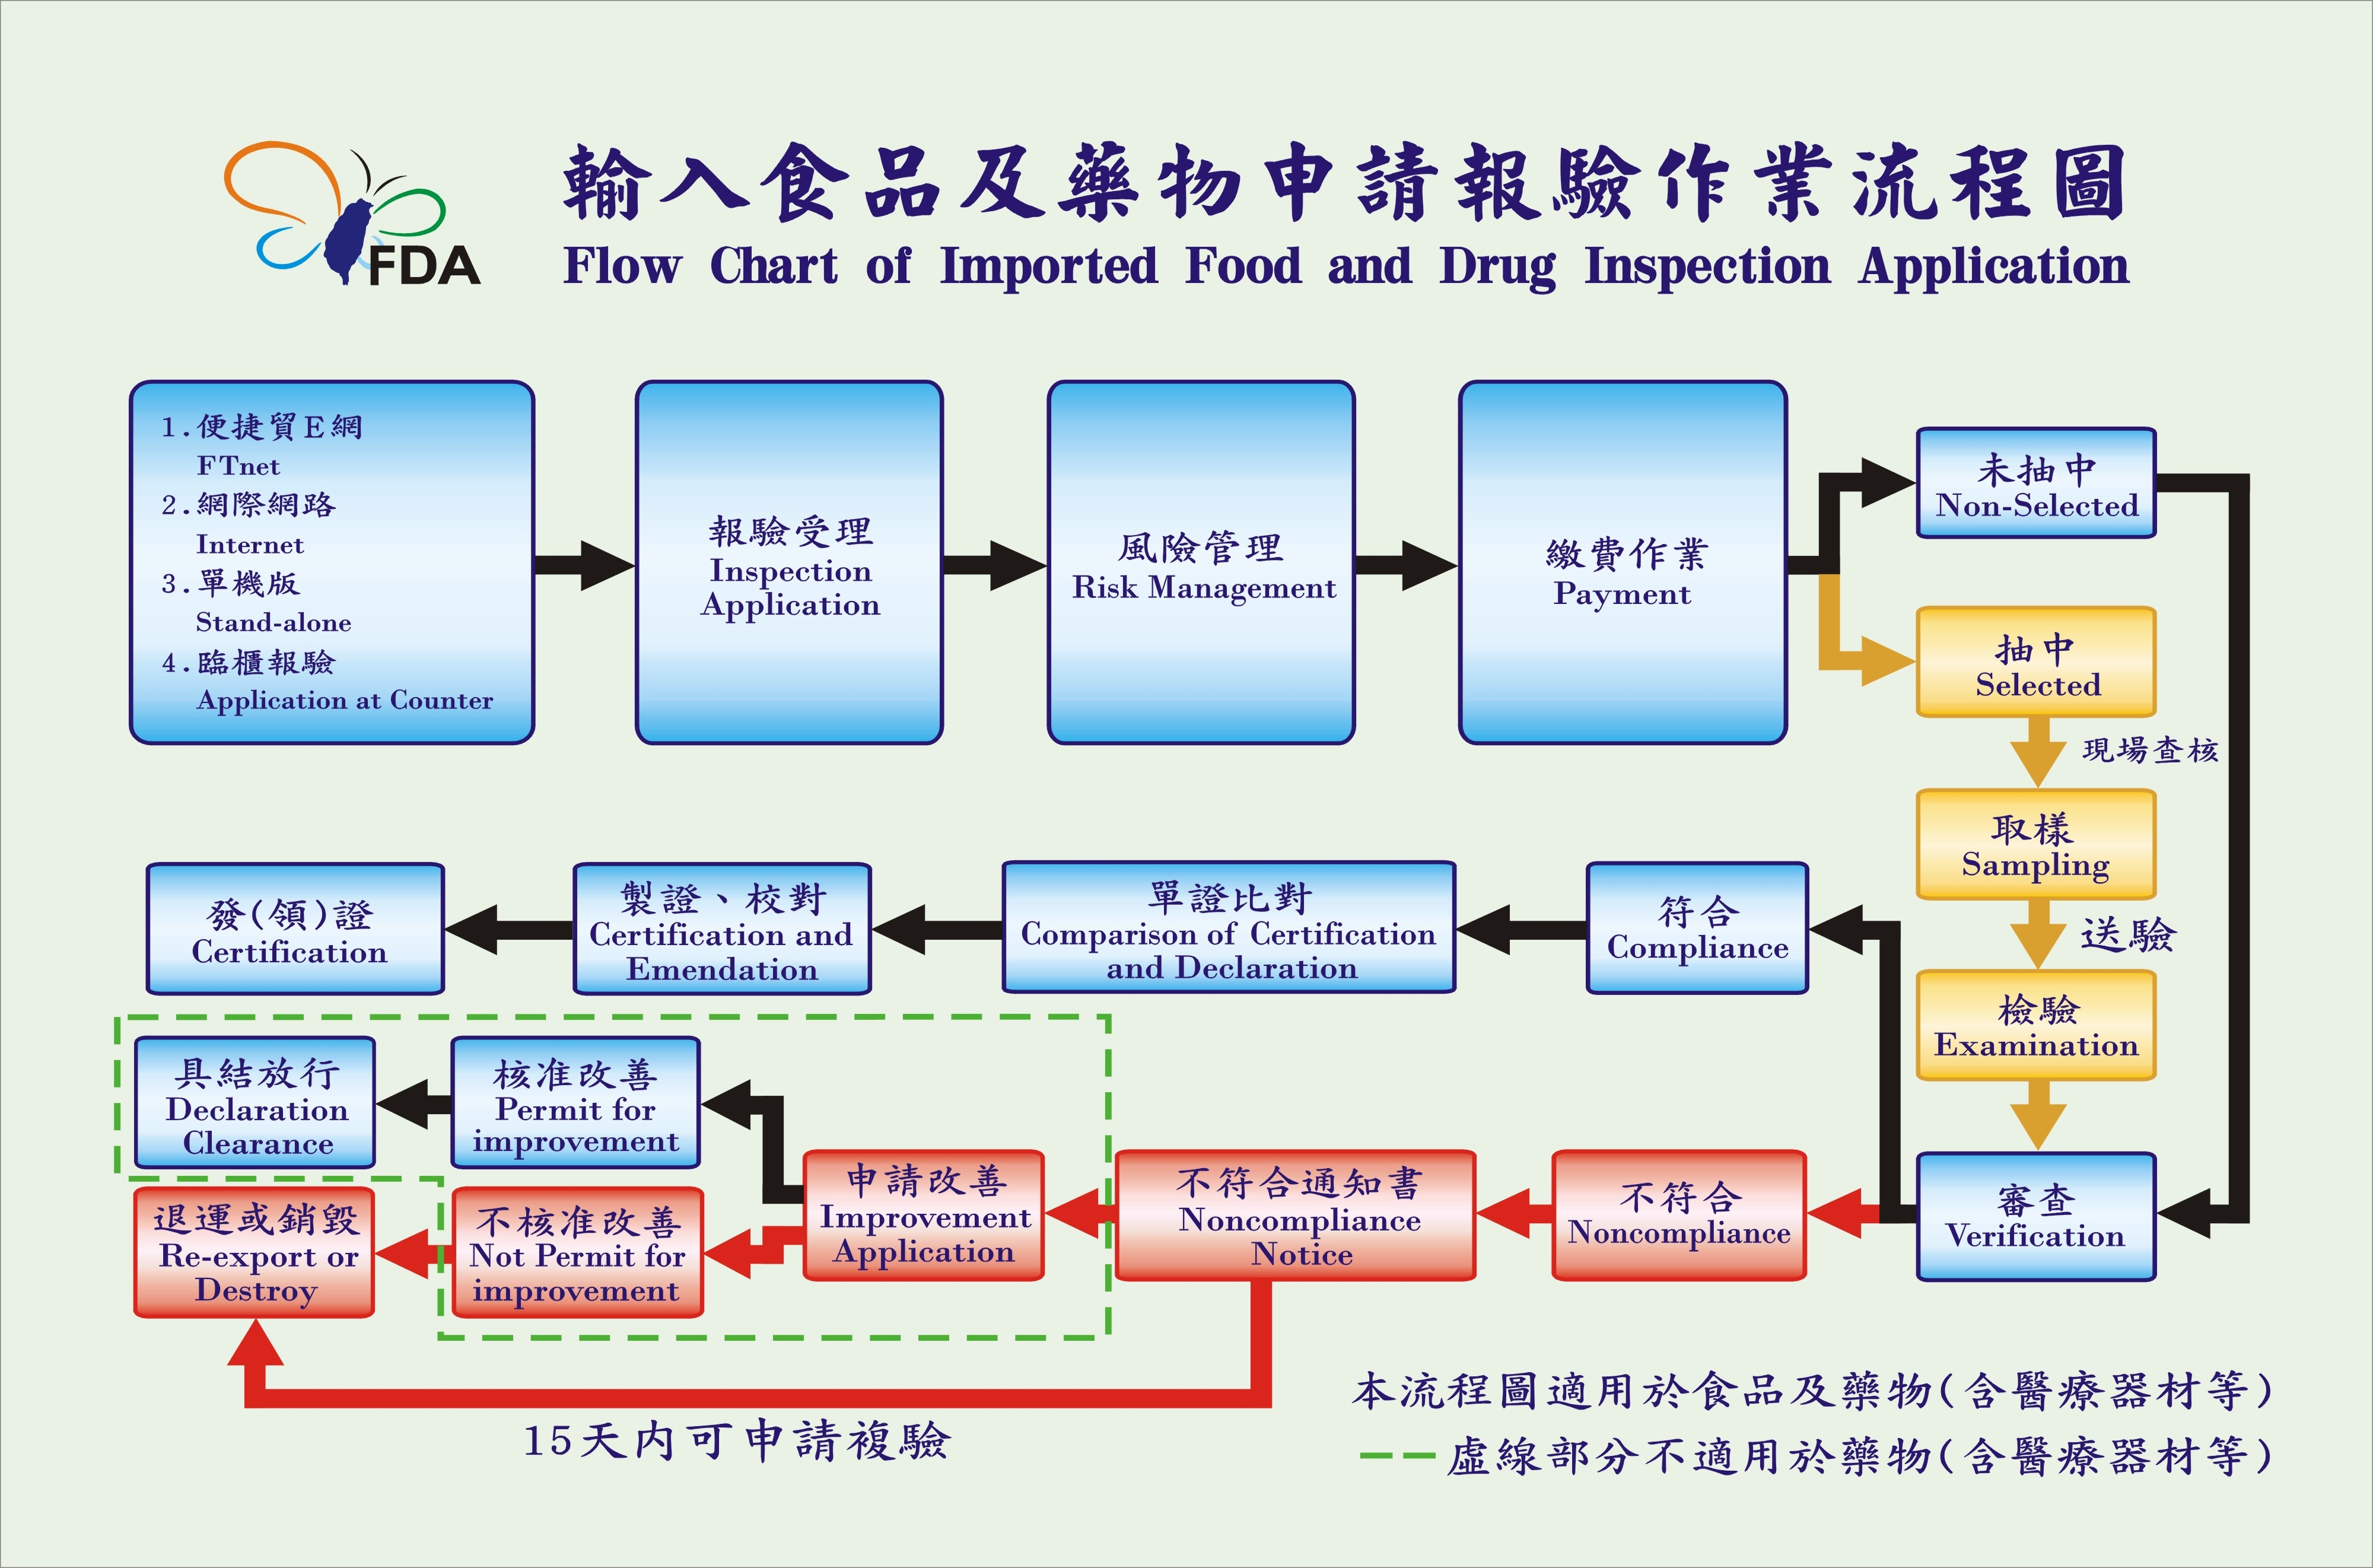 輸入食品及藥品申請報驗作業流程圖